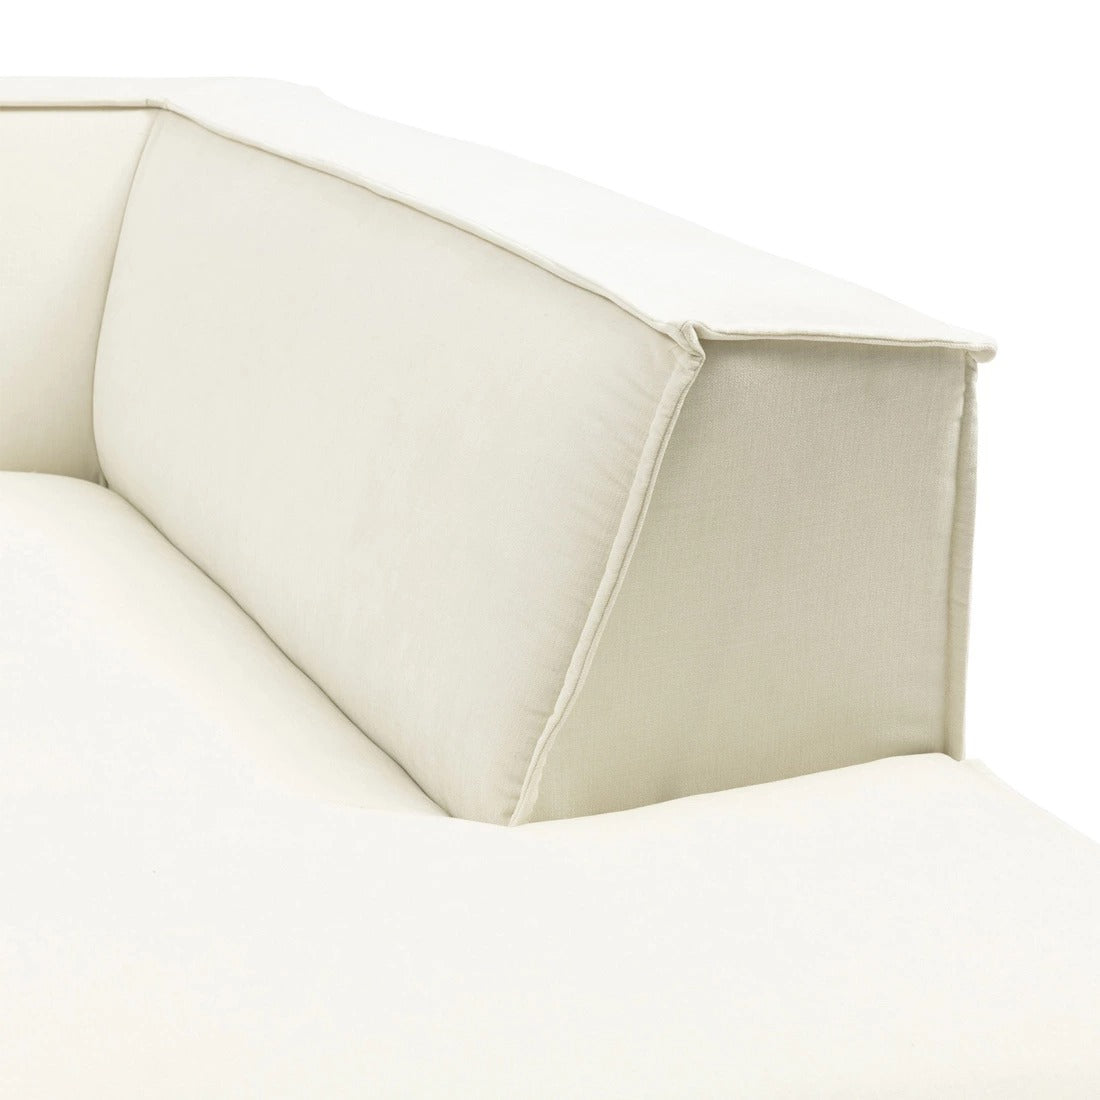 Modular sofa THE JAGGER - Méridienne